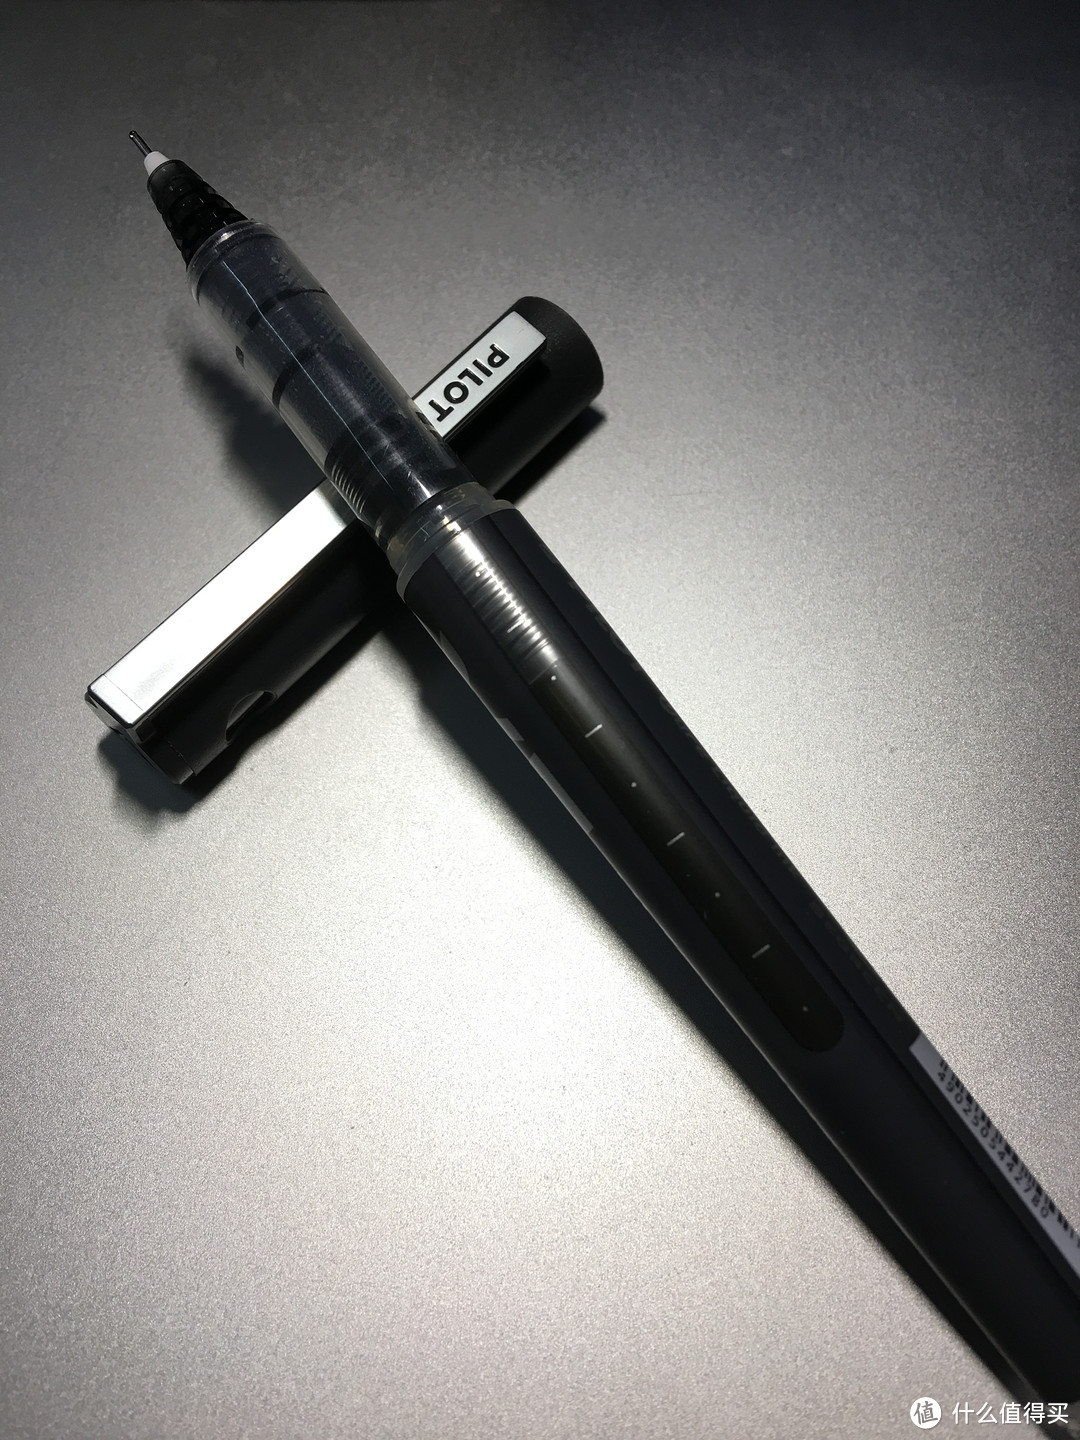 整体光面塑料材质，笔头细长，只是普通水笔的样子